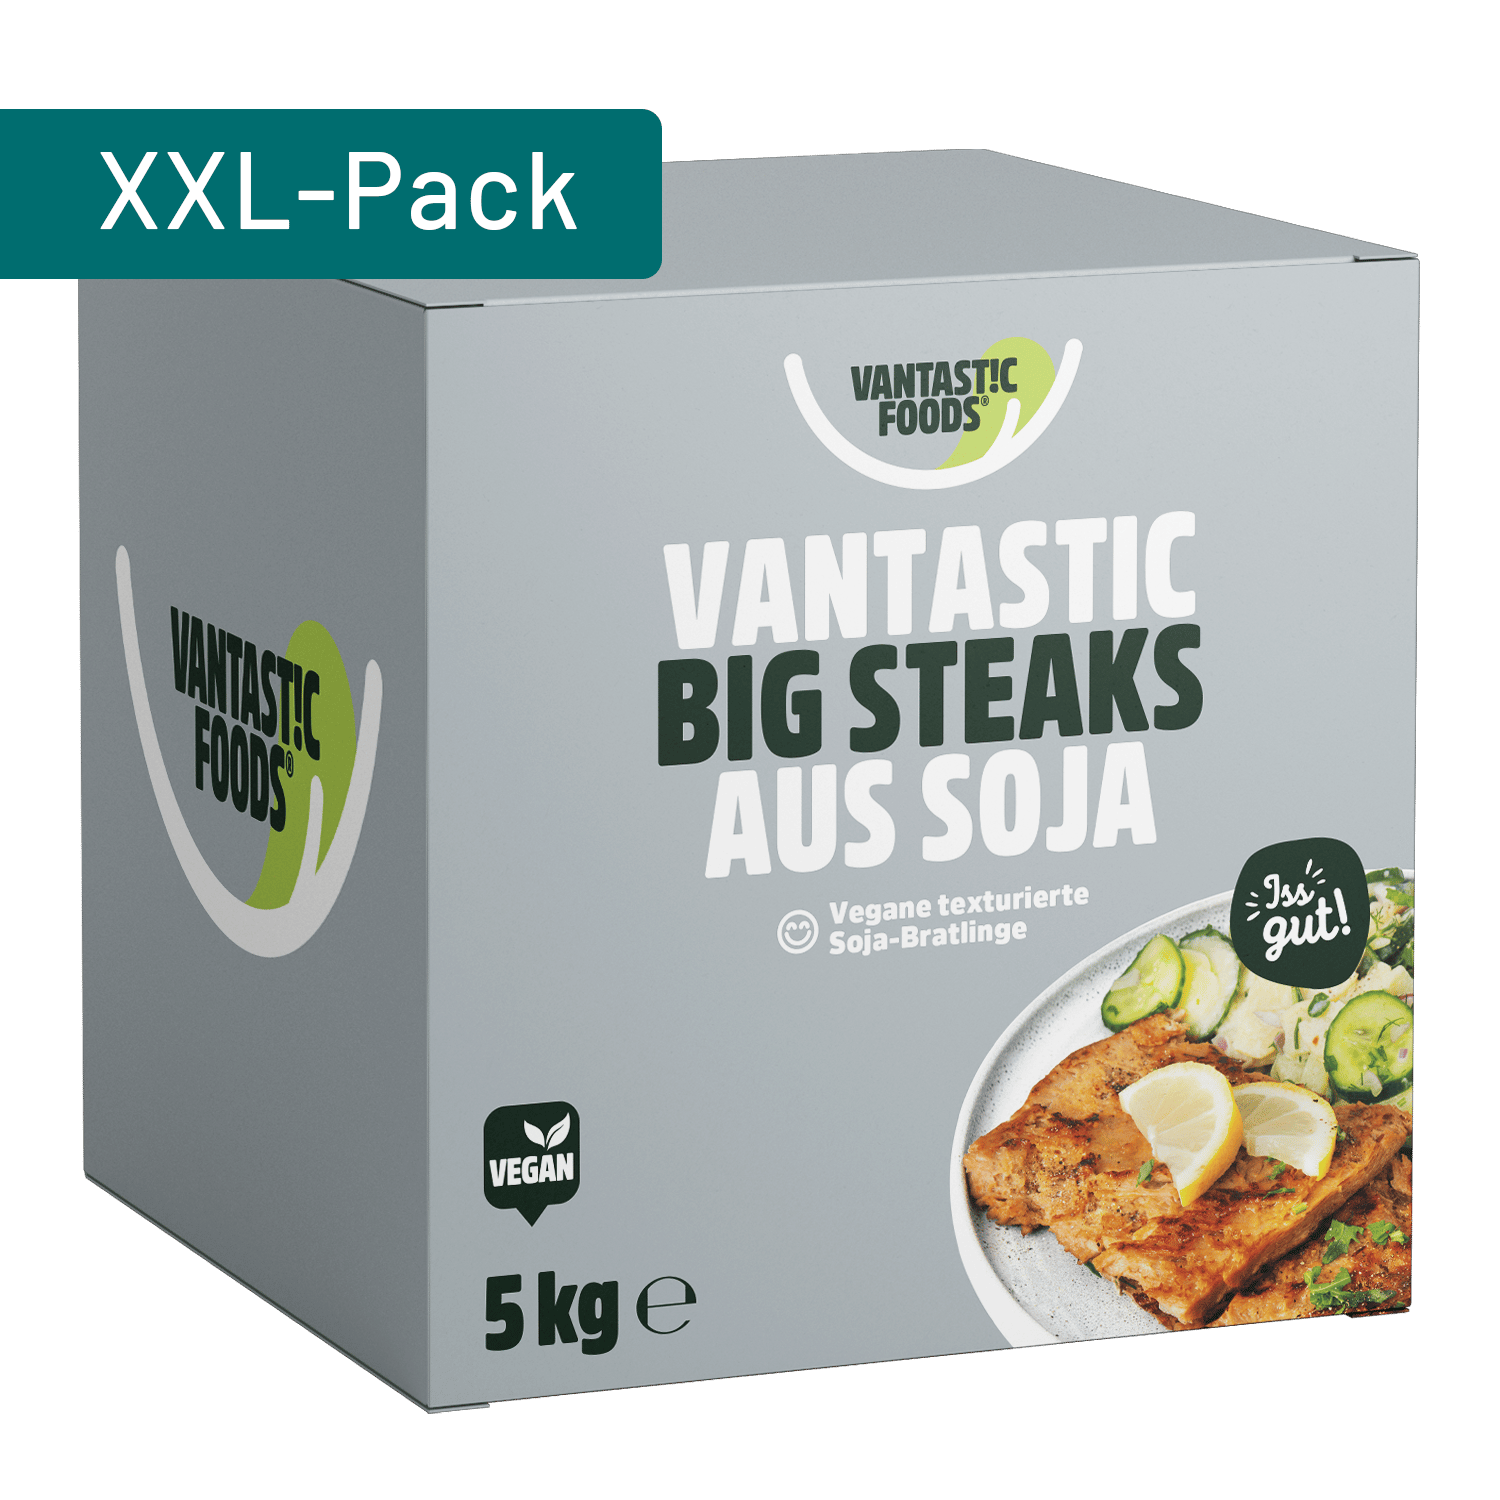 Vantastic Big Steaks From Soy, 5kg